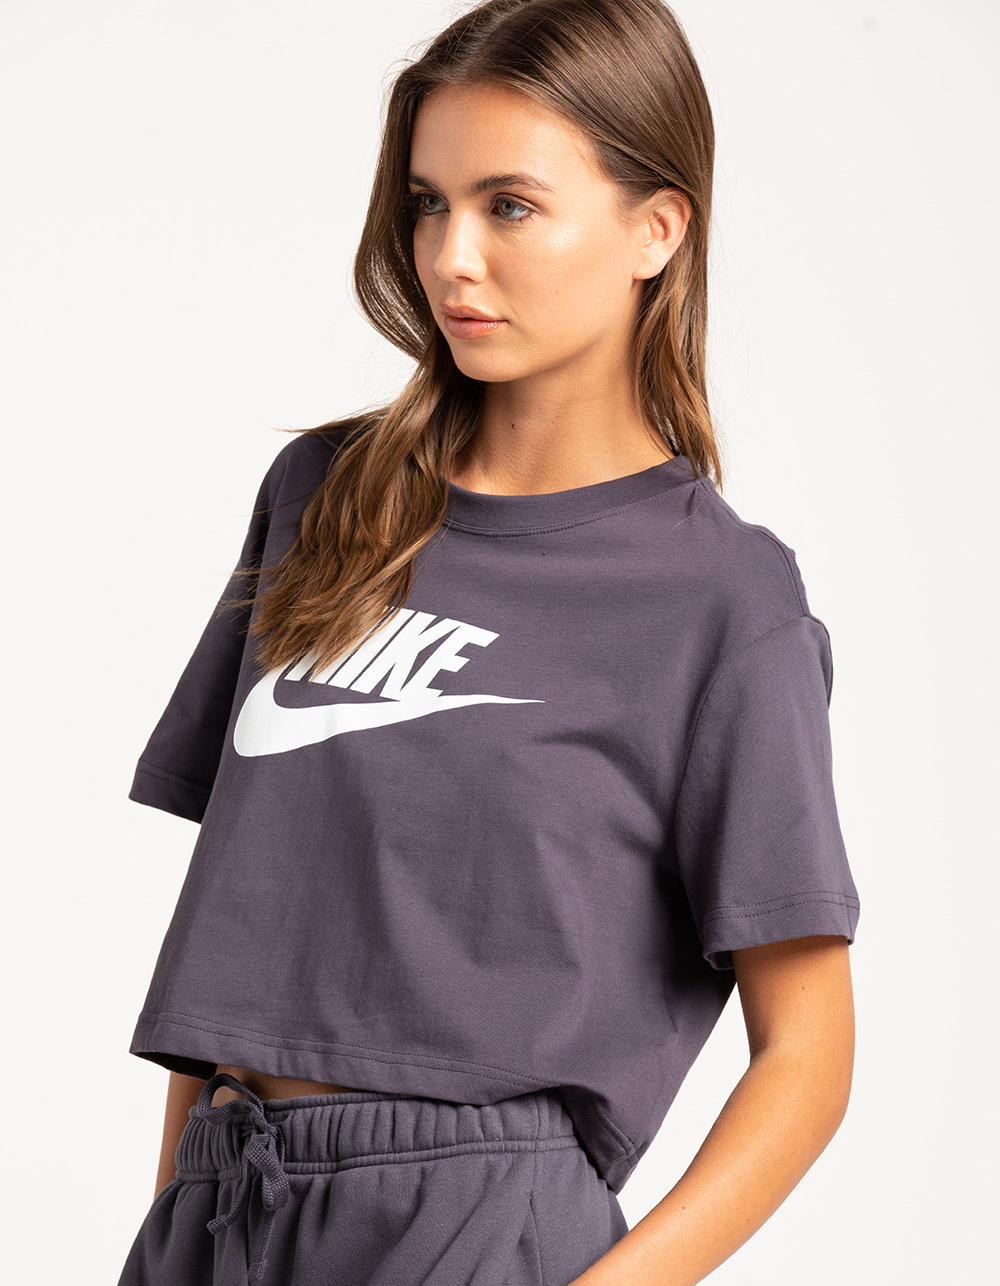 Nike / Women's Essential Futura Crop Top